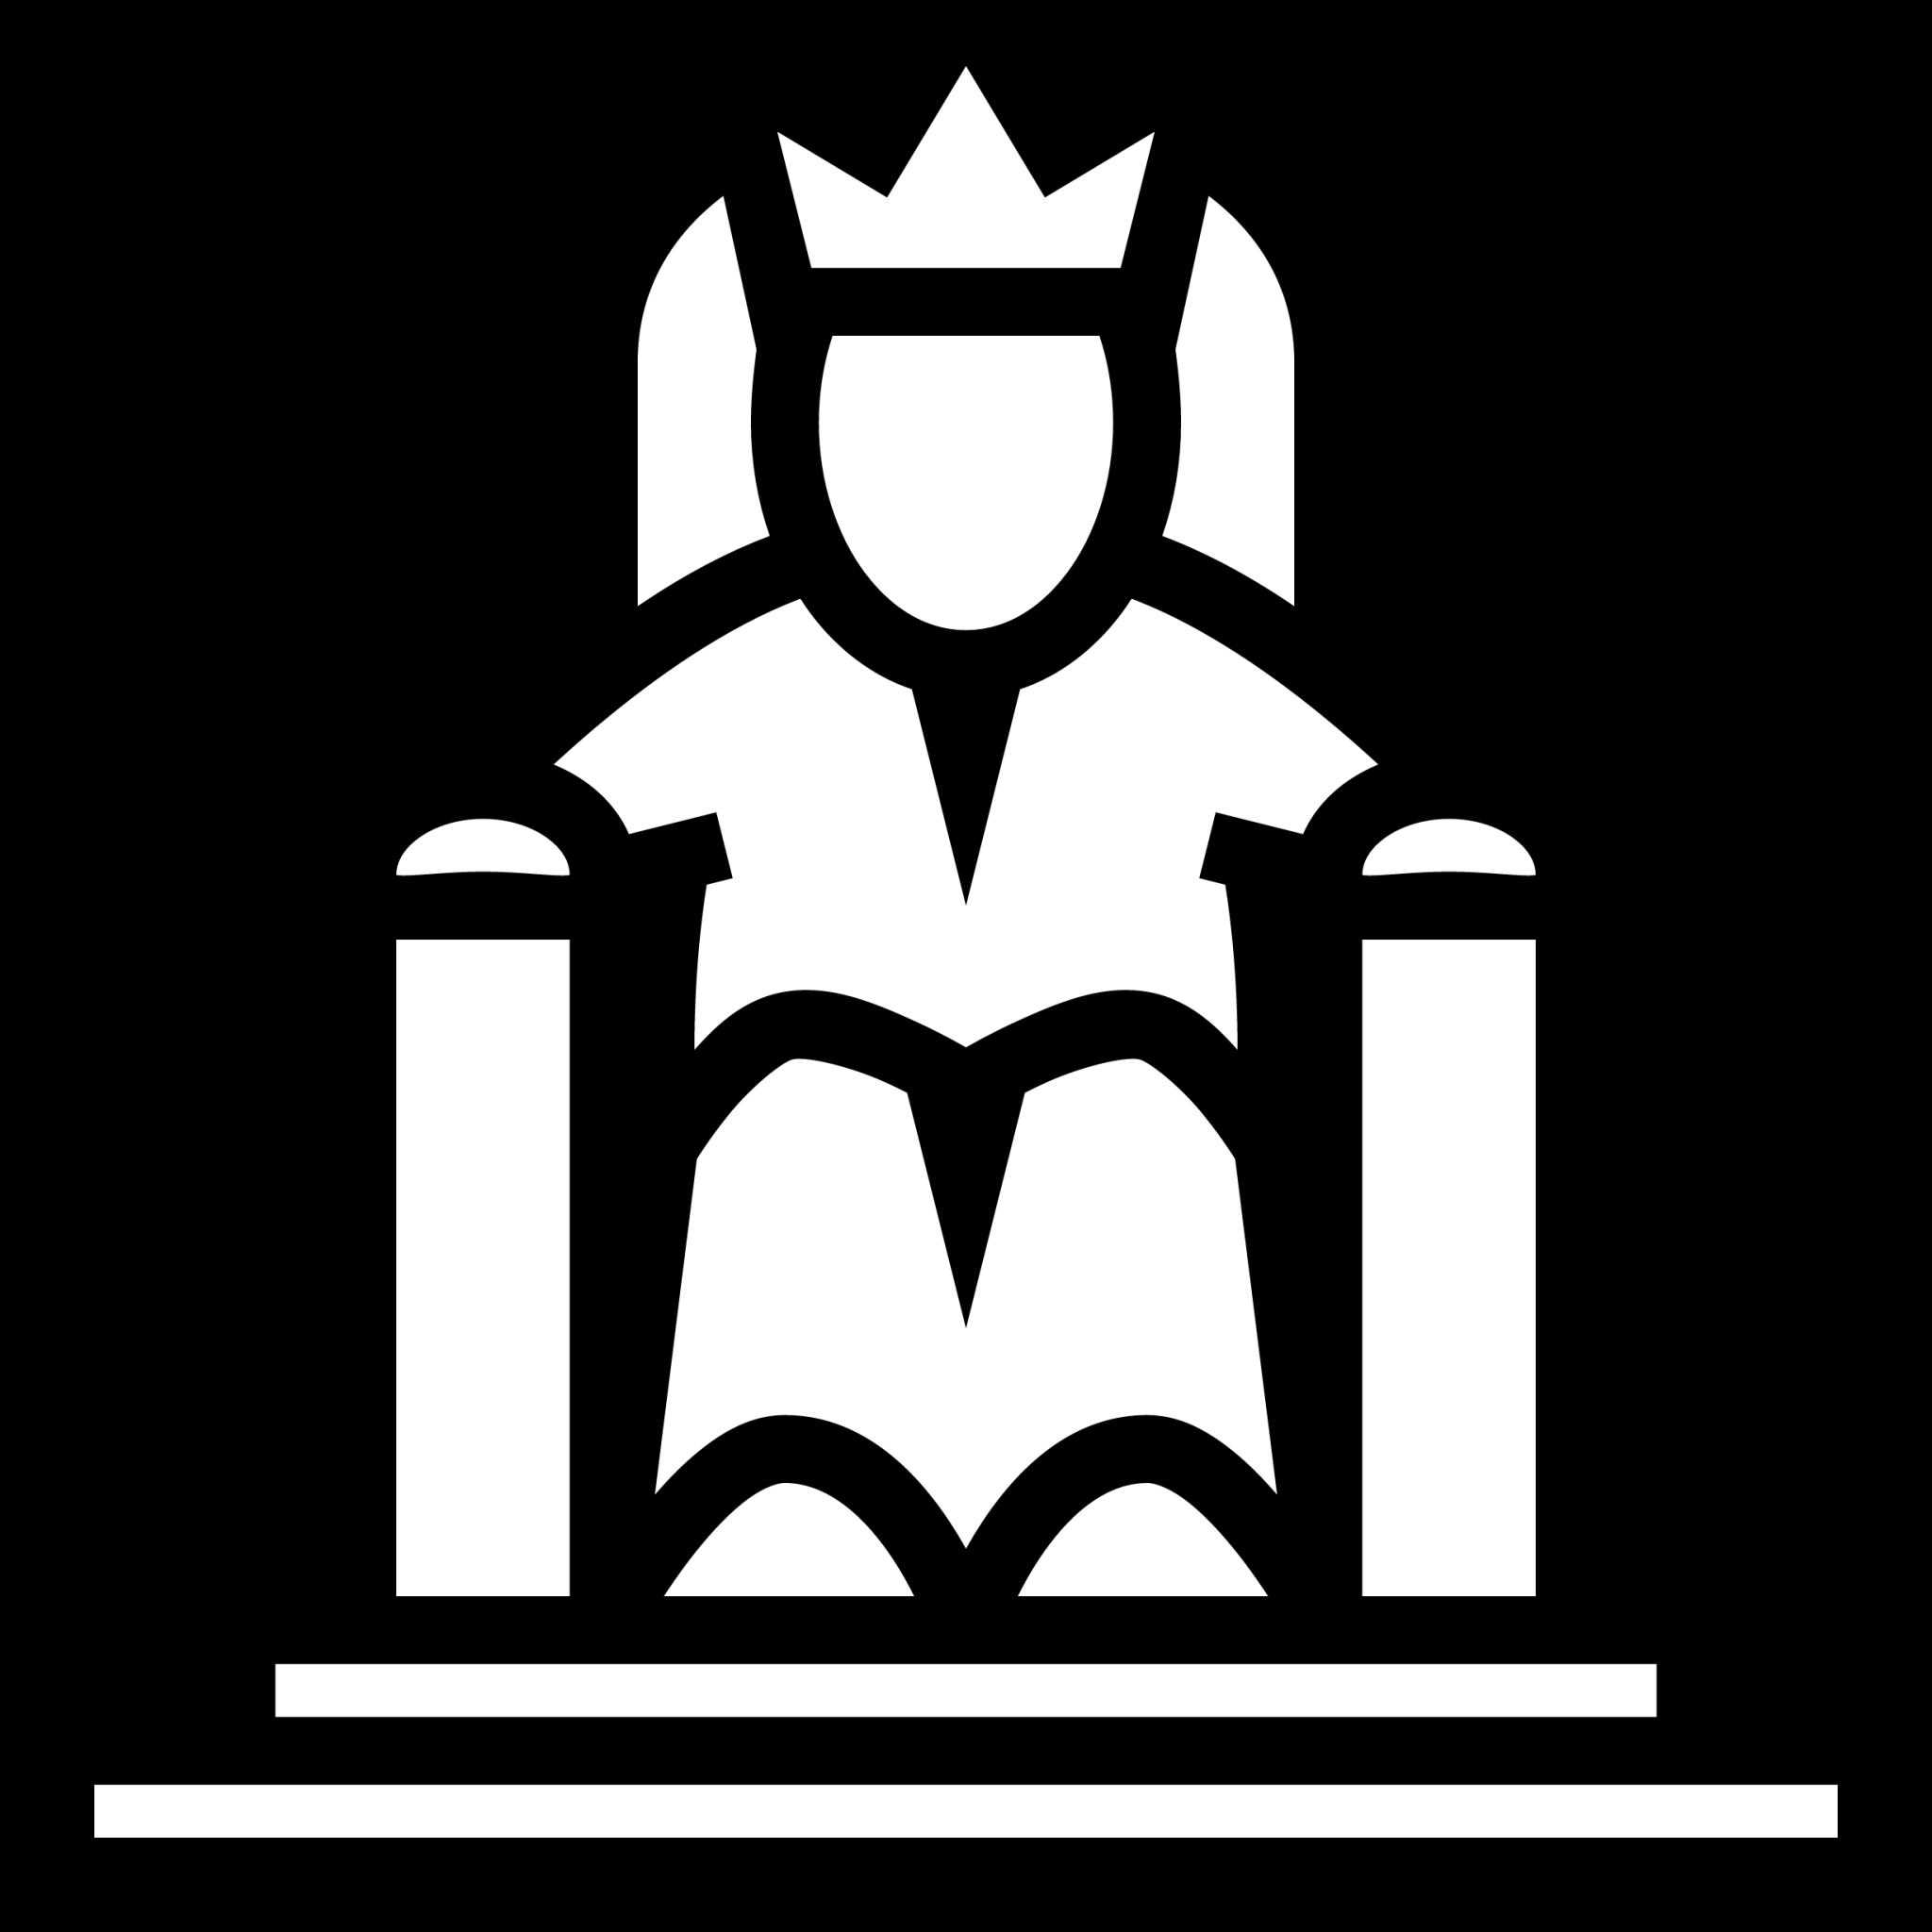 throne king icon